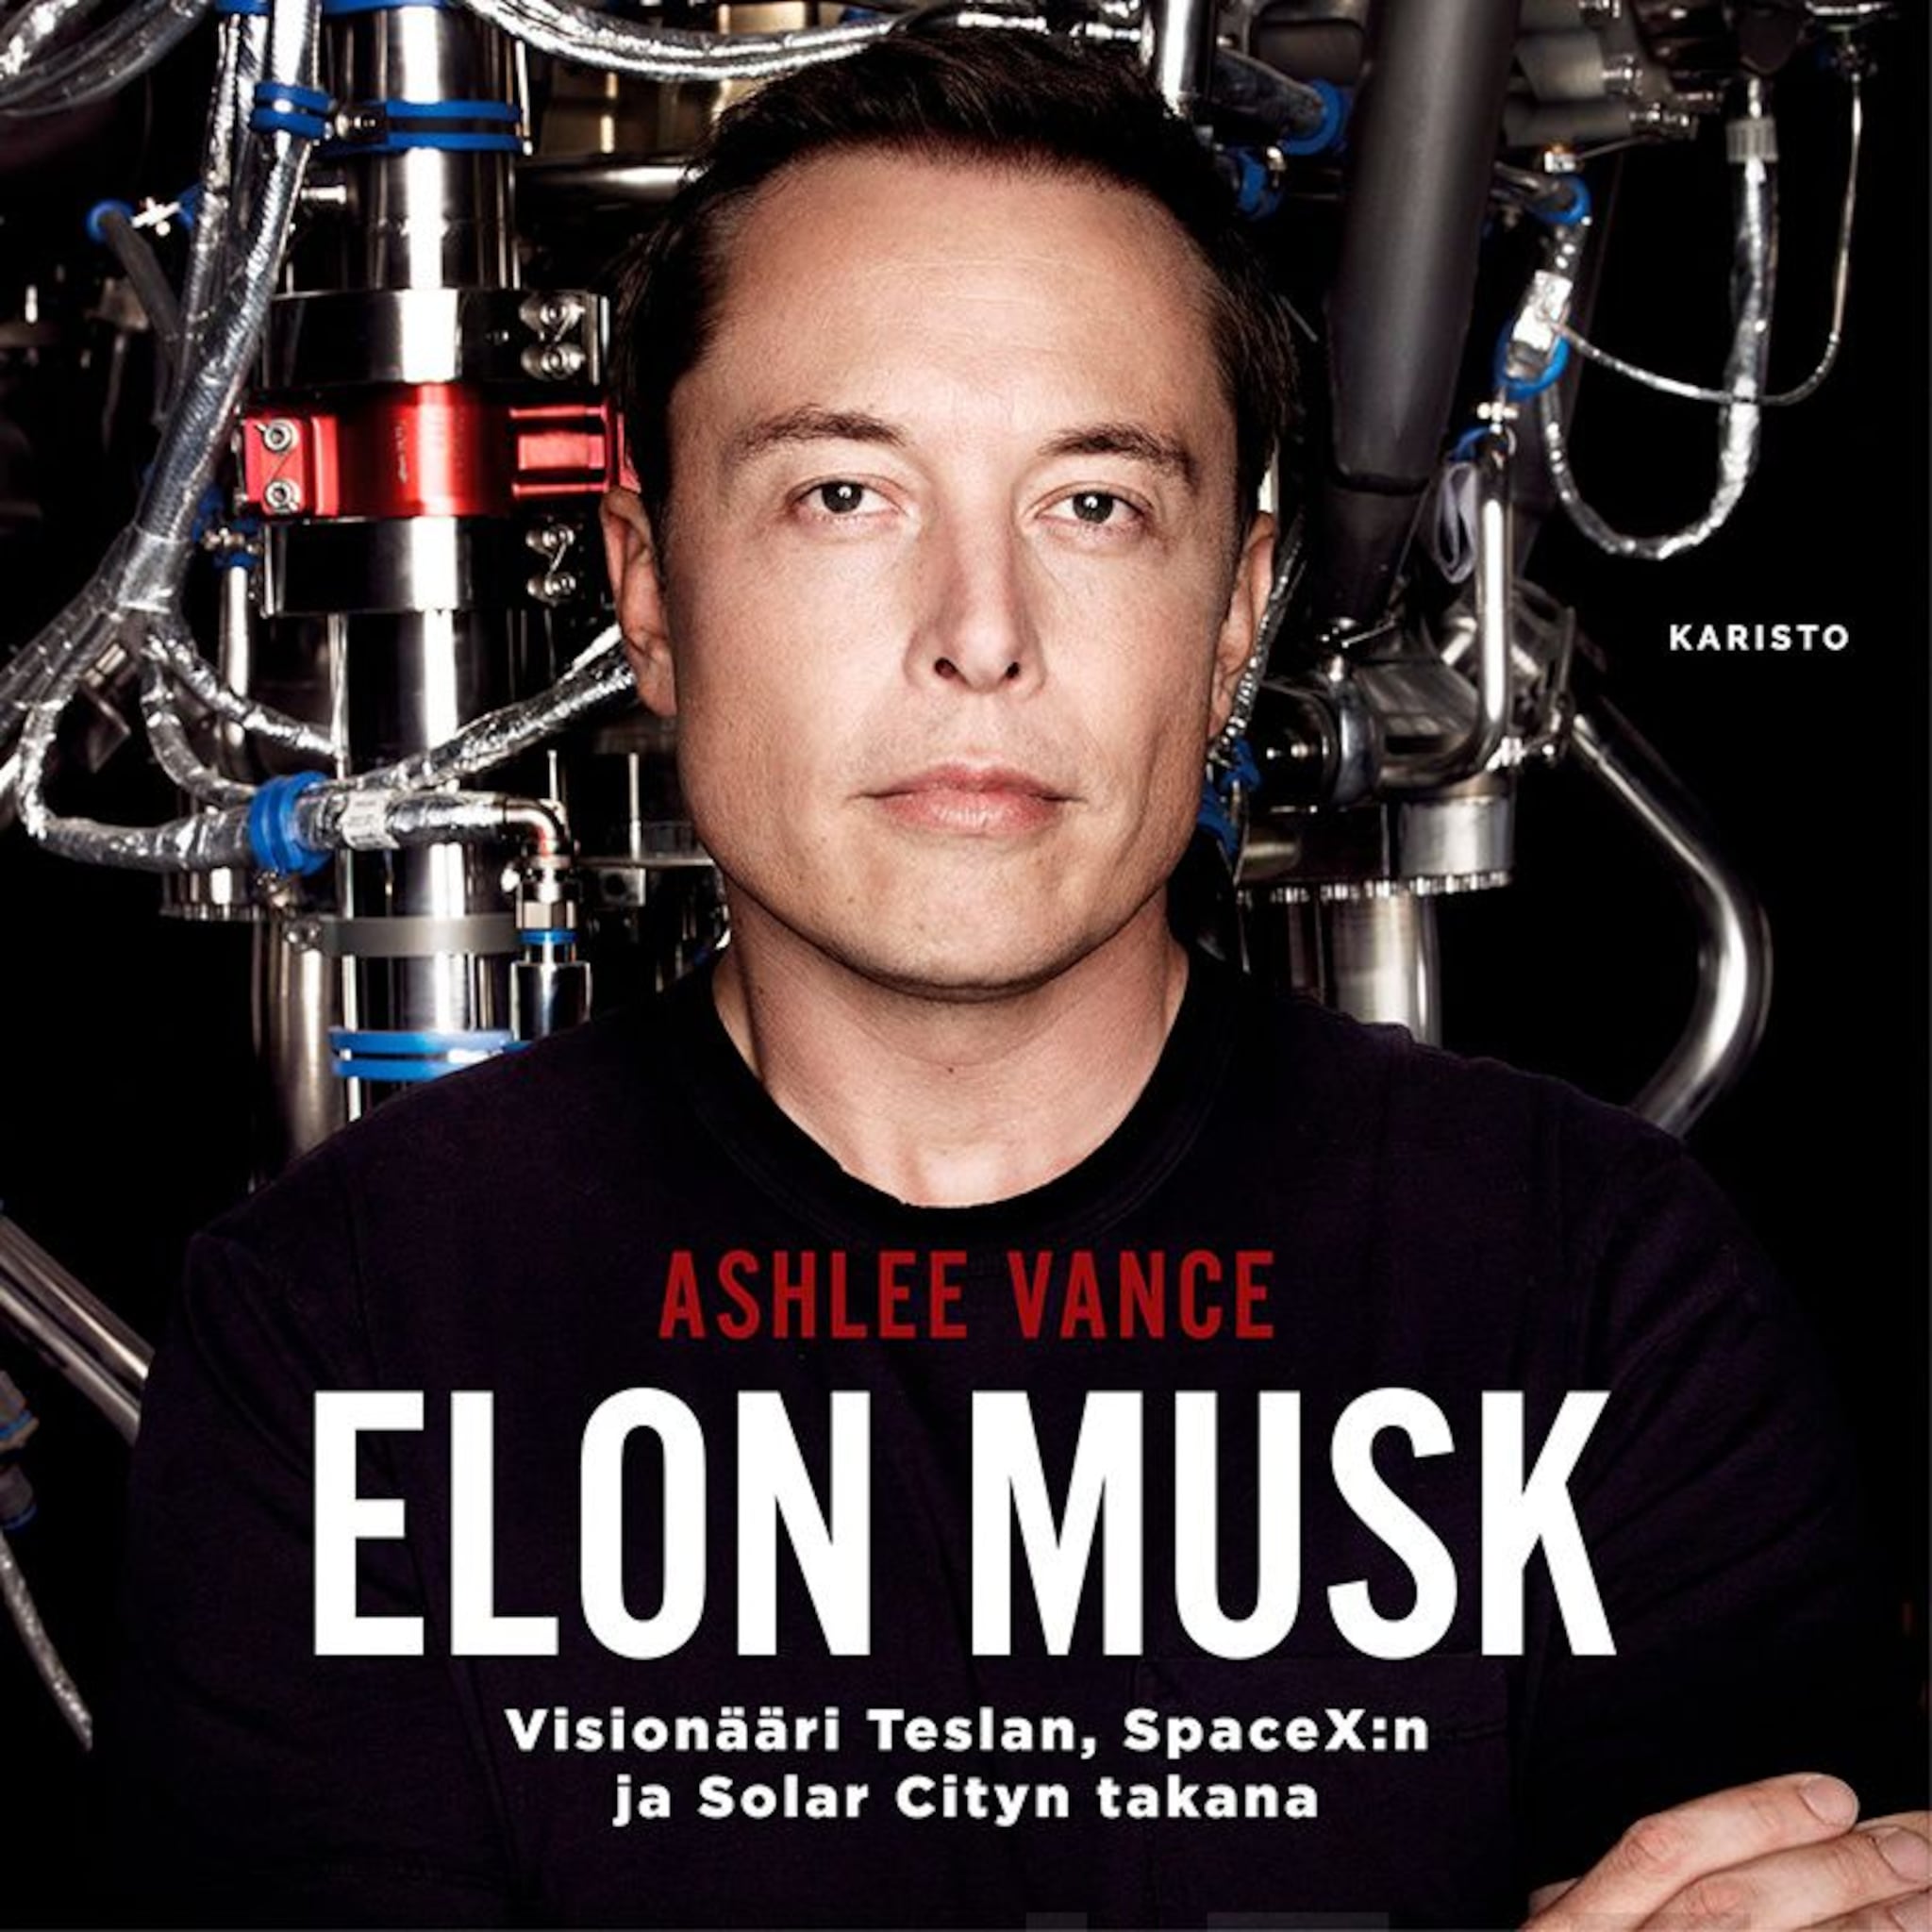 Elon Musk,Visionääri Teslan, SpaceX:n ja Solar Cityn takana ilmaiseksi